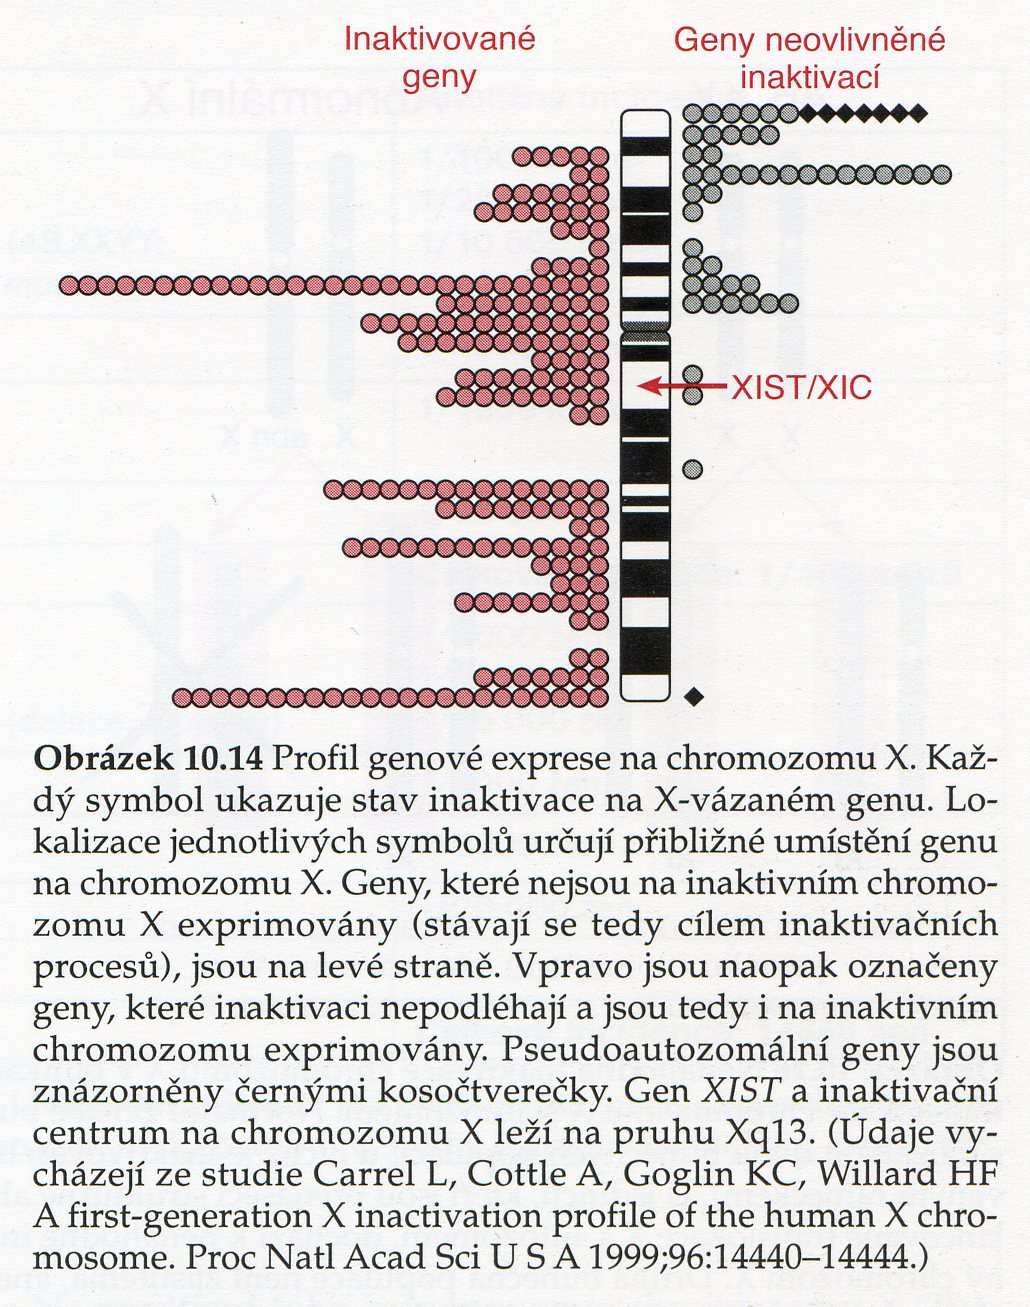 CHROMOSOM X na inaktivovaném X chromosomu je inaktivována většina genů, ale některé zůstávají aktivní (10 15% genů), k jejich přepisu dochází na inaktivovaném i neinaktivovaném chromosomu, více je